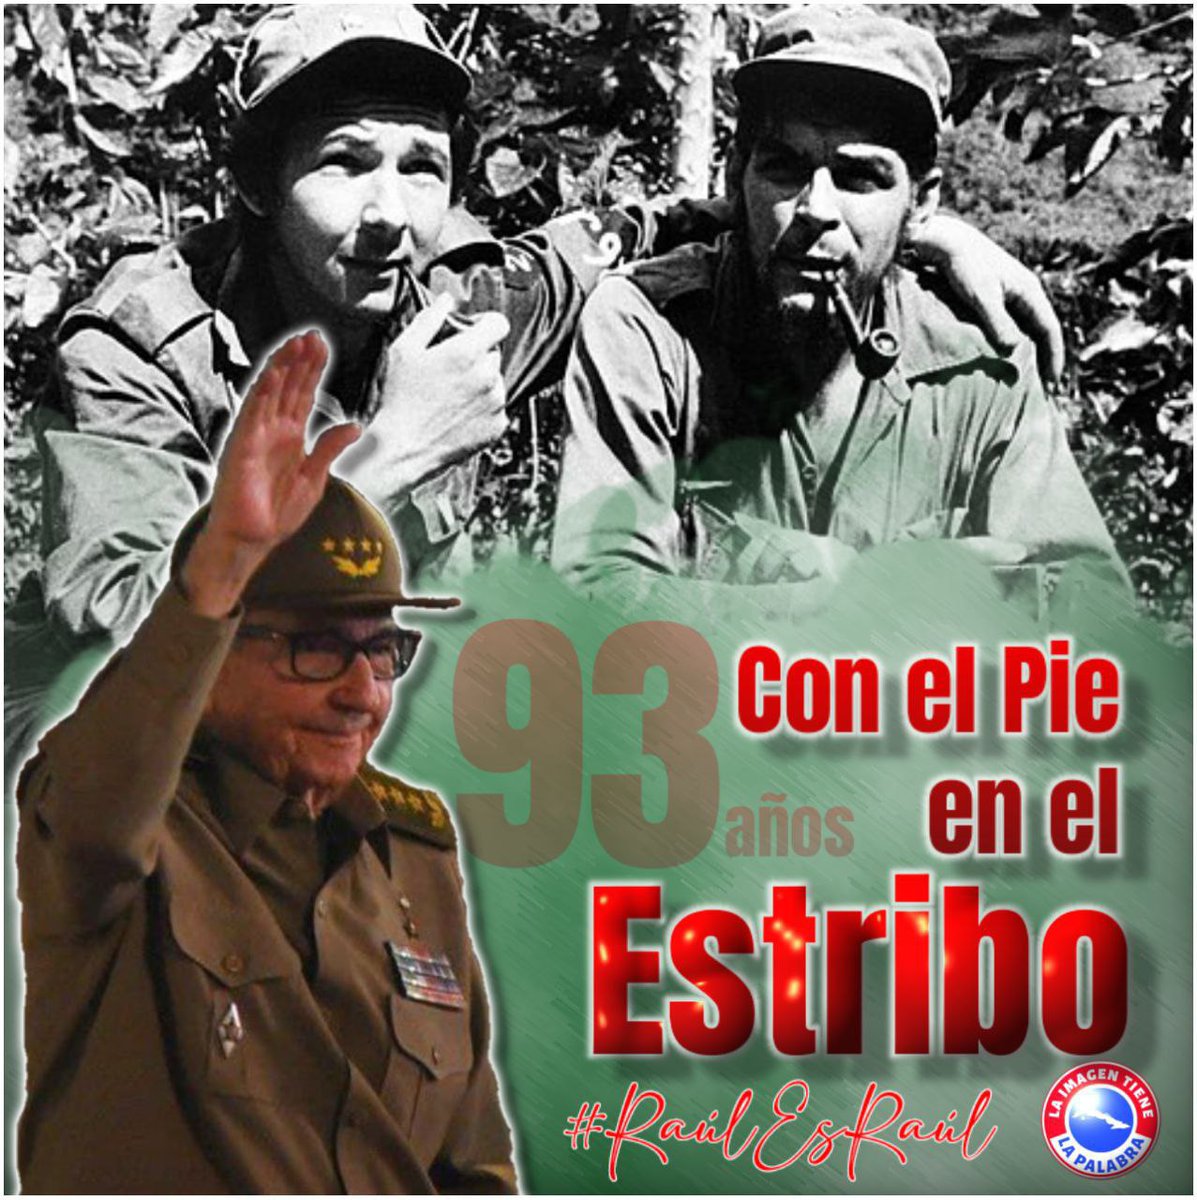 Fidel sobre Raúl: “Es para mí un privilegio que, además de un extraordinario revolucionario, sea un hermano”. #RaulEsRaul